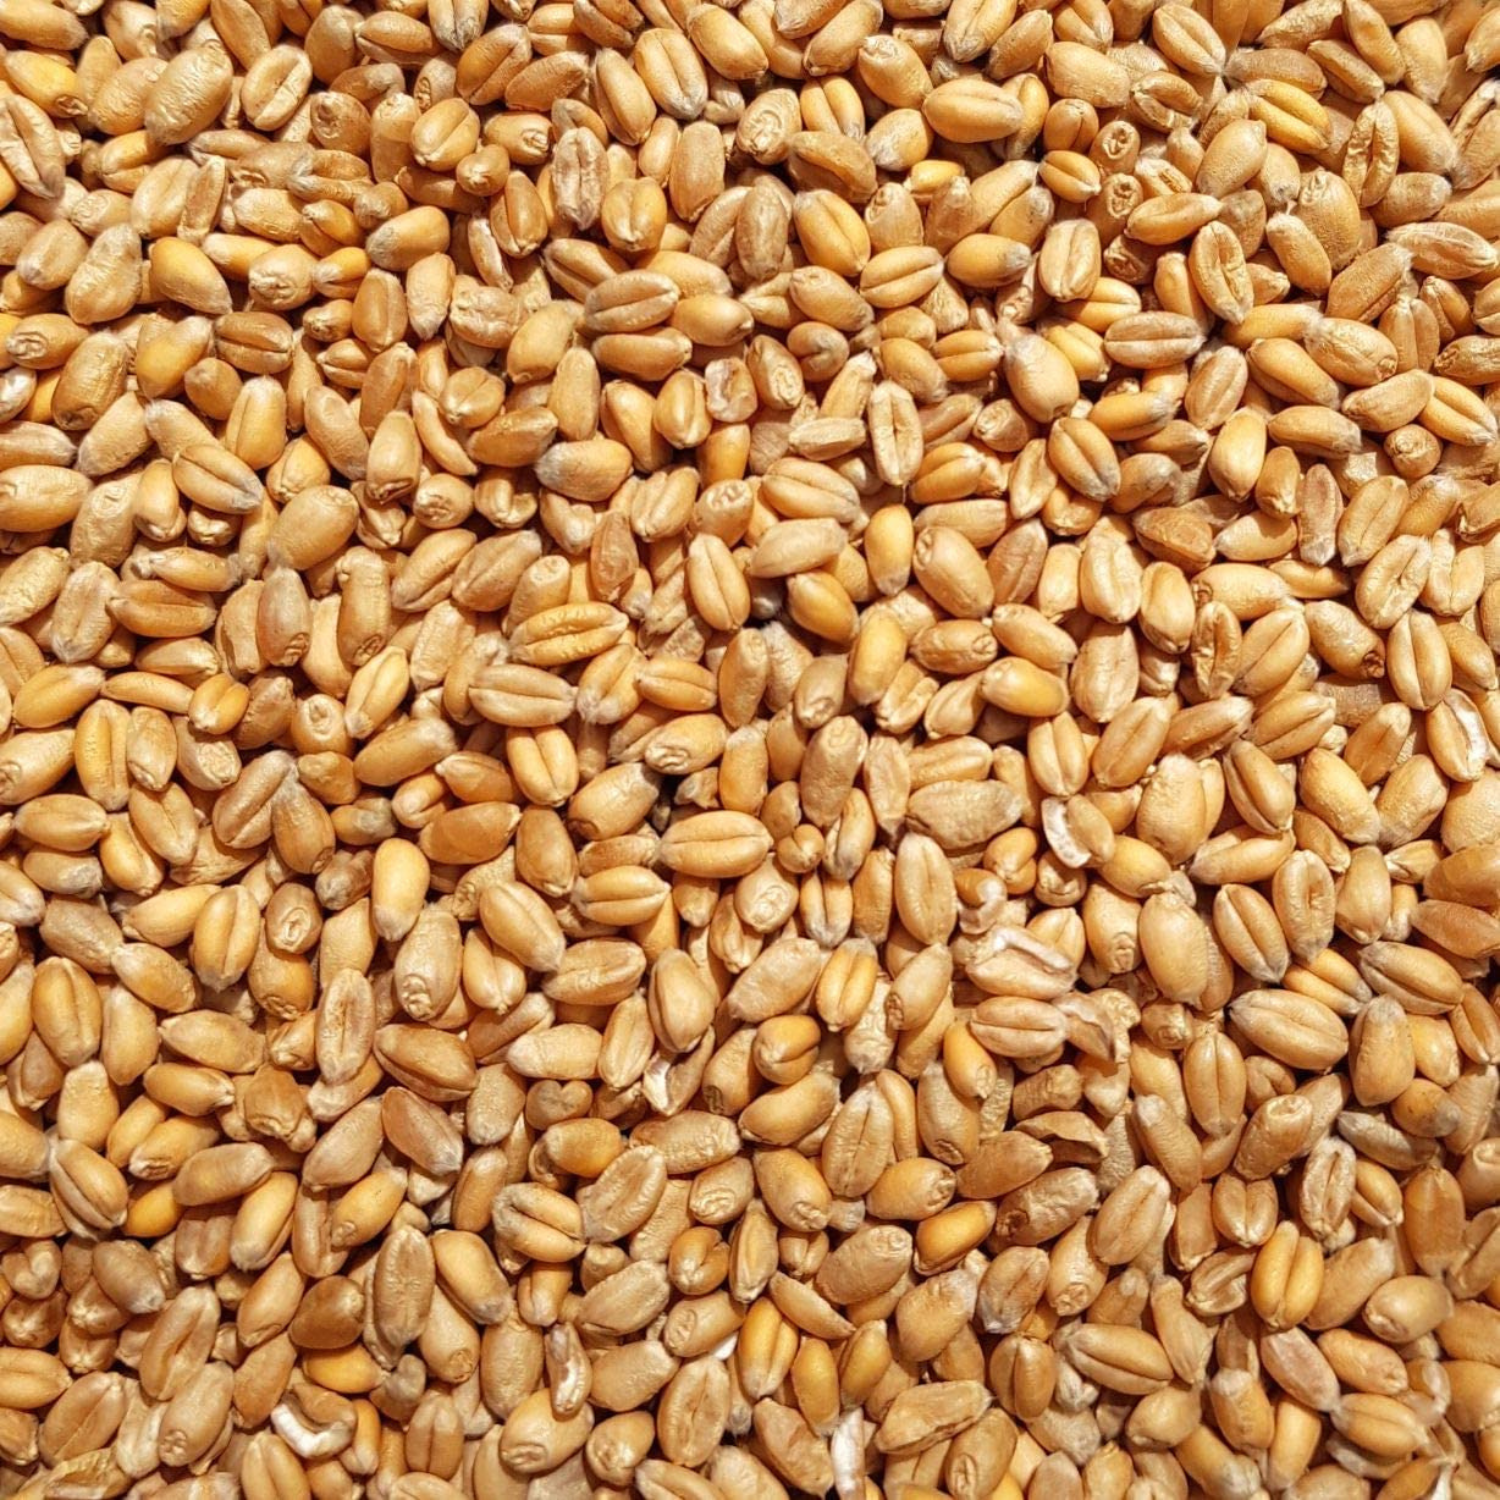 Supravit Weizen Futterweizen 25kg  Einzelfuttermittel für Tauben, Vögel, Nager & Geflügel